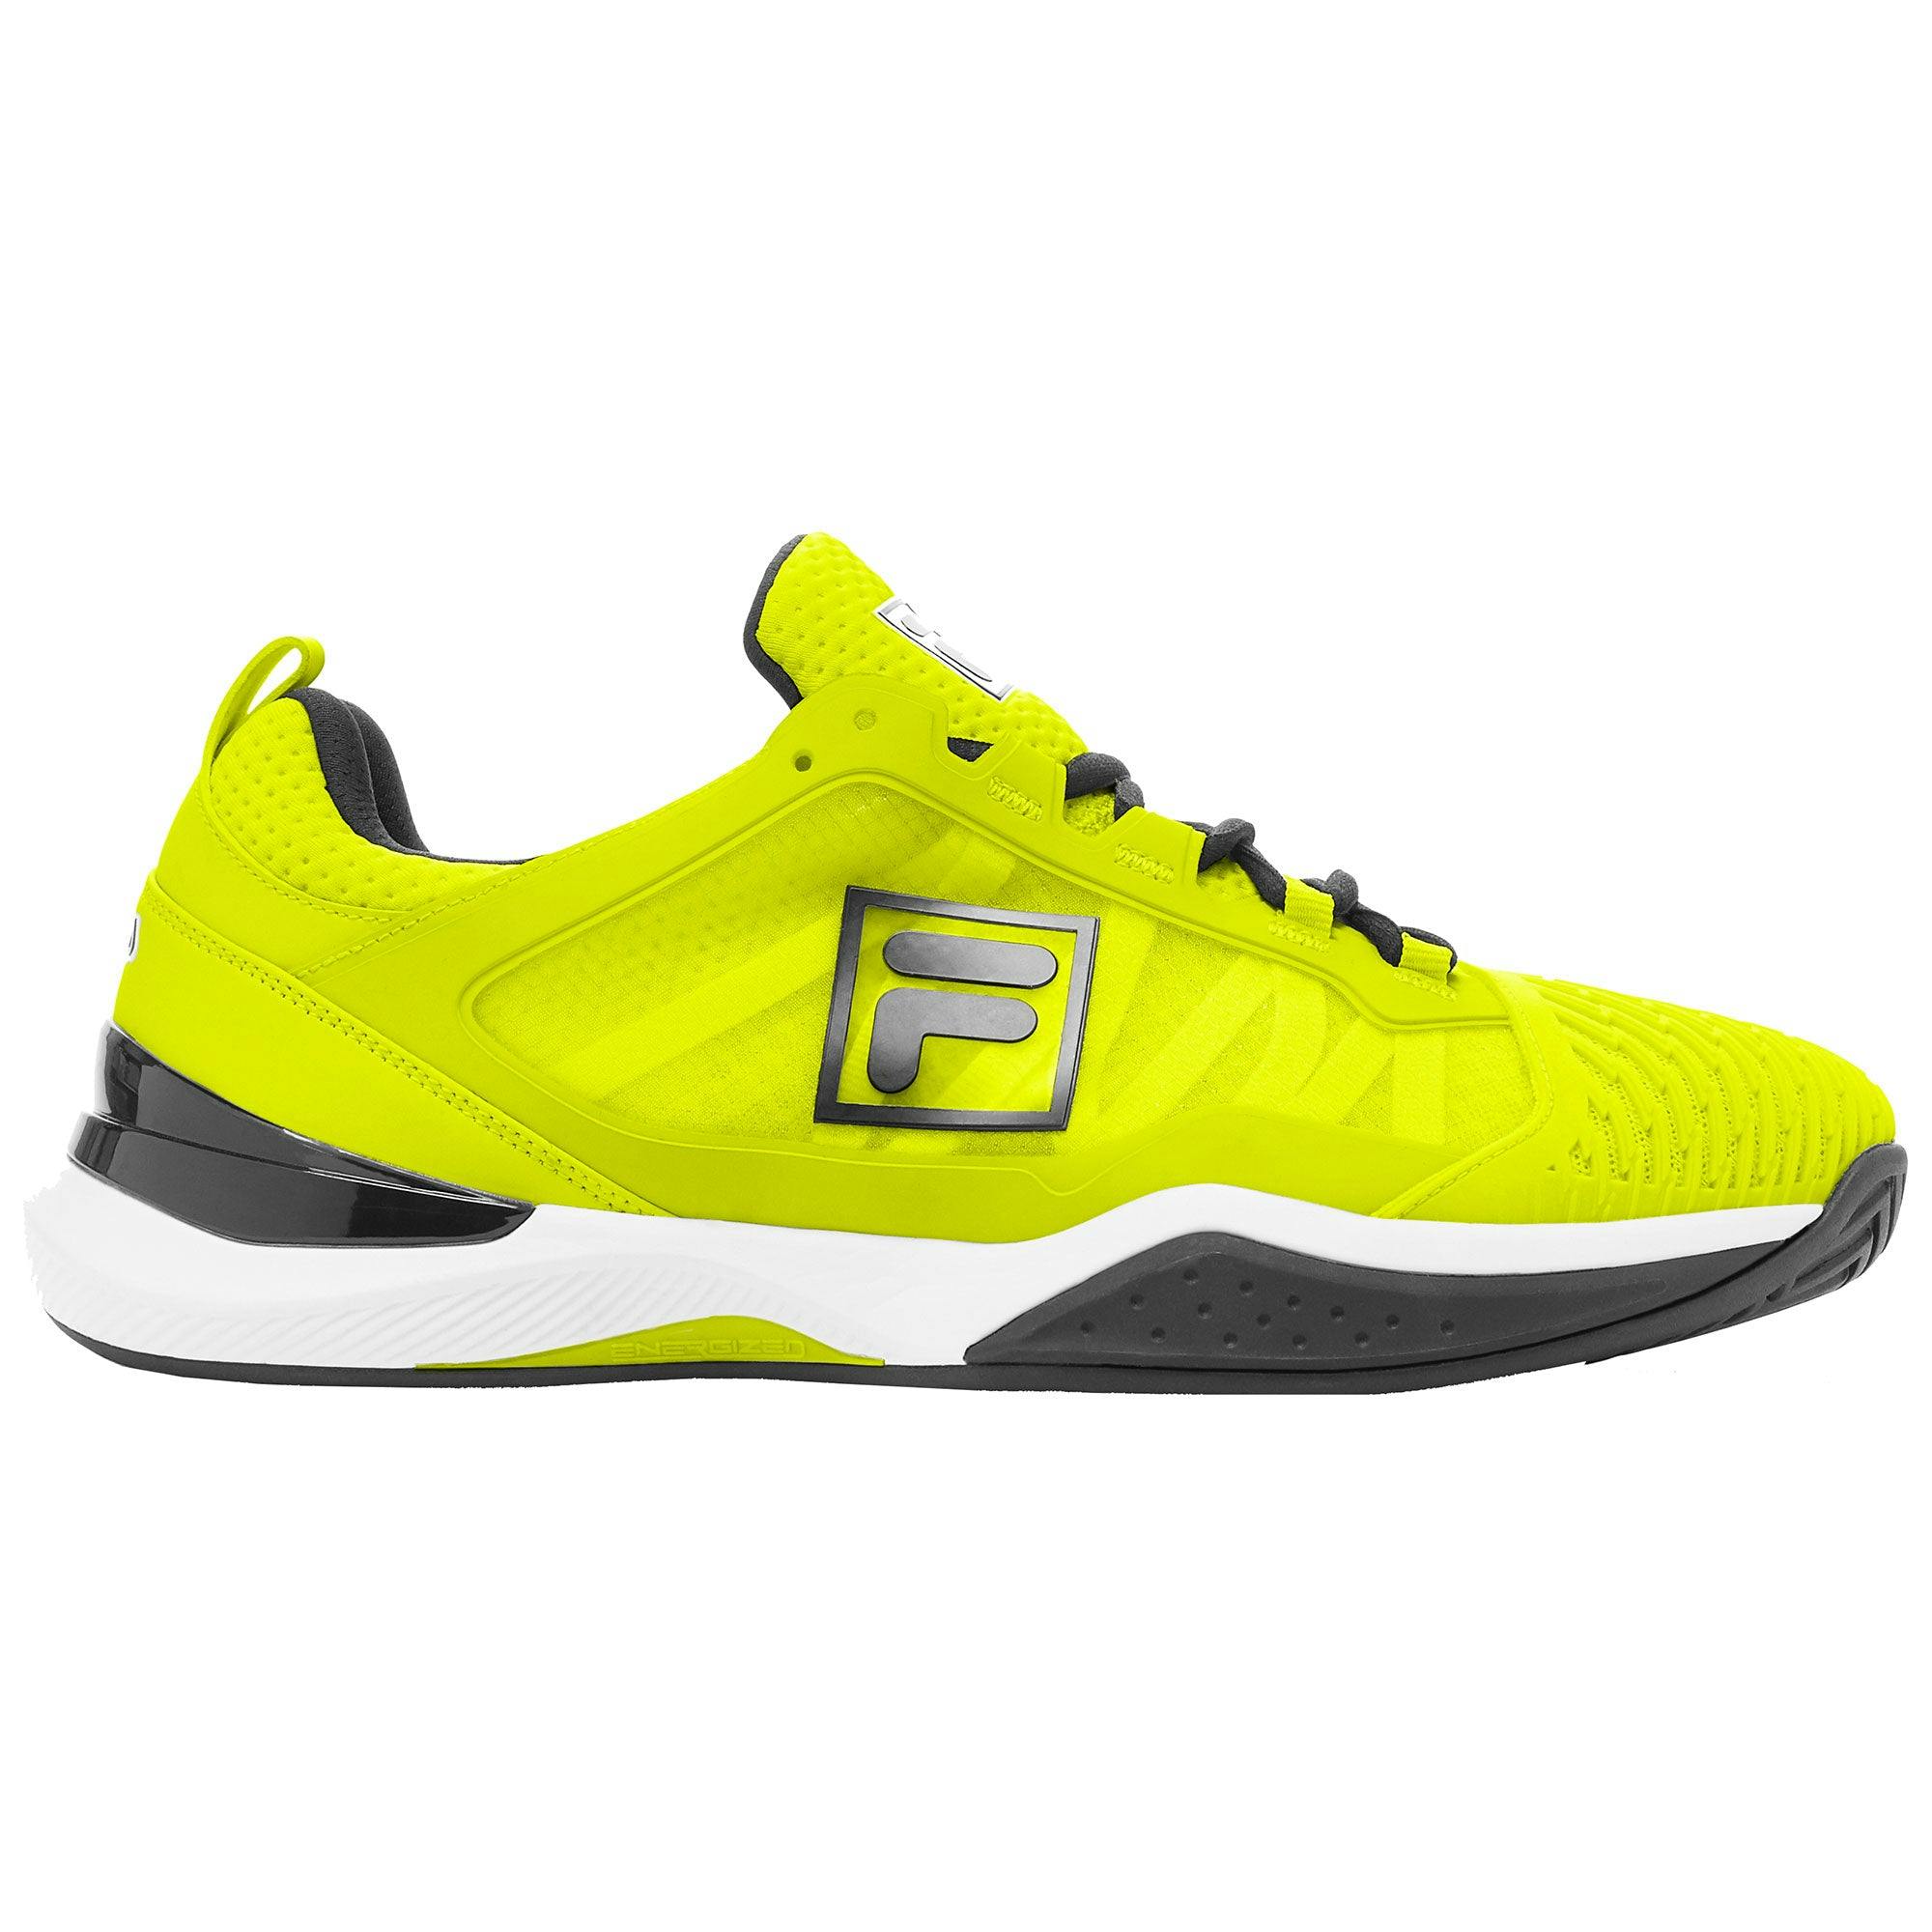 Fila Speedserve Energized Mens Tennis Shoes - SFTY/BK/WT 702 / D Medium / 12.0